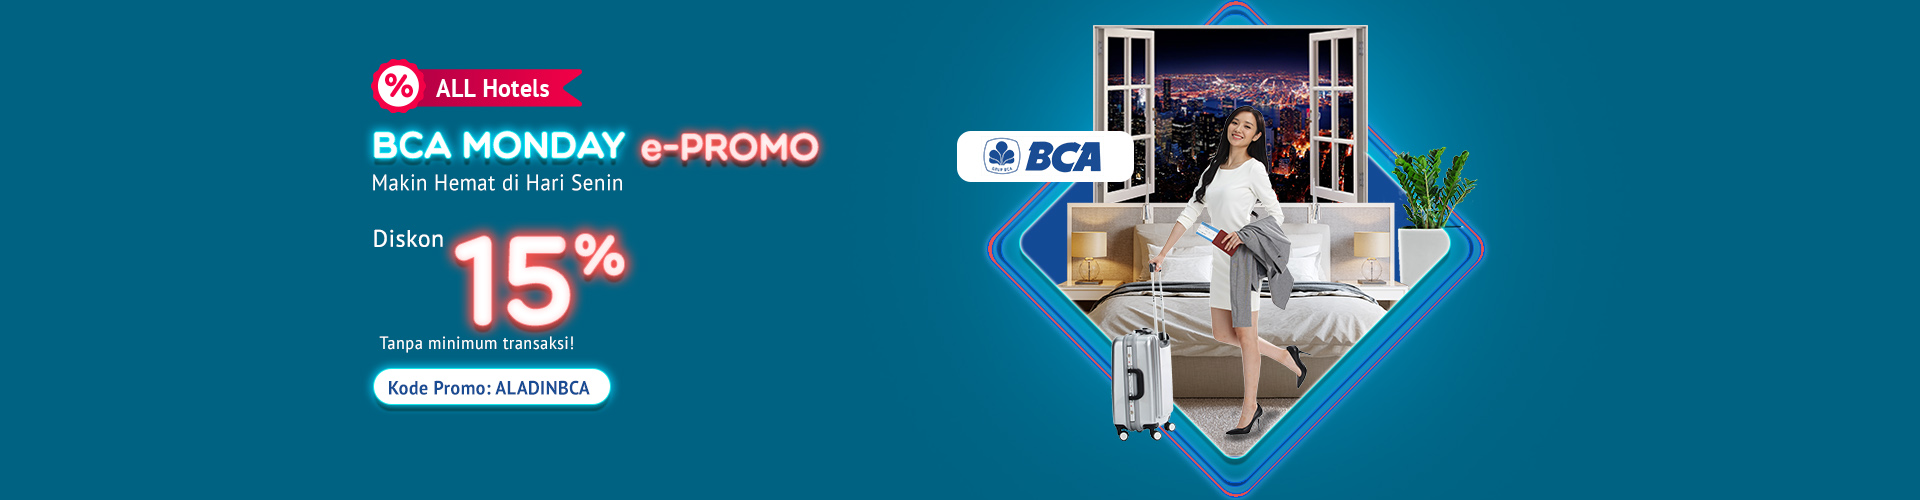 BCA MONDAY e-PROMO